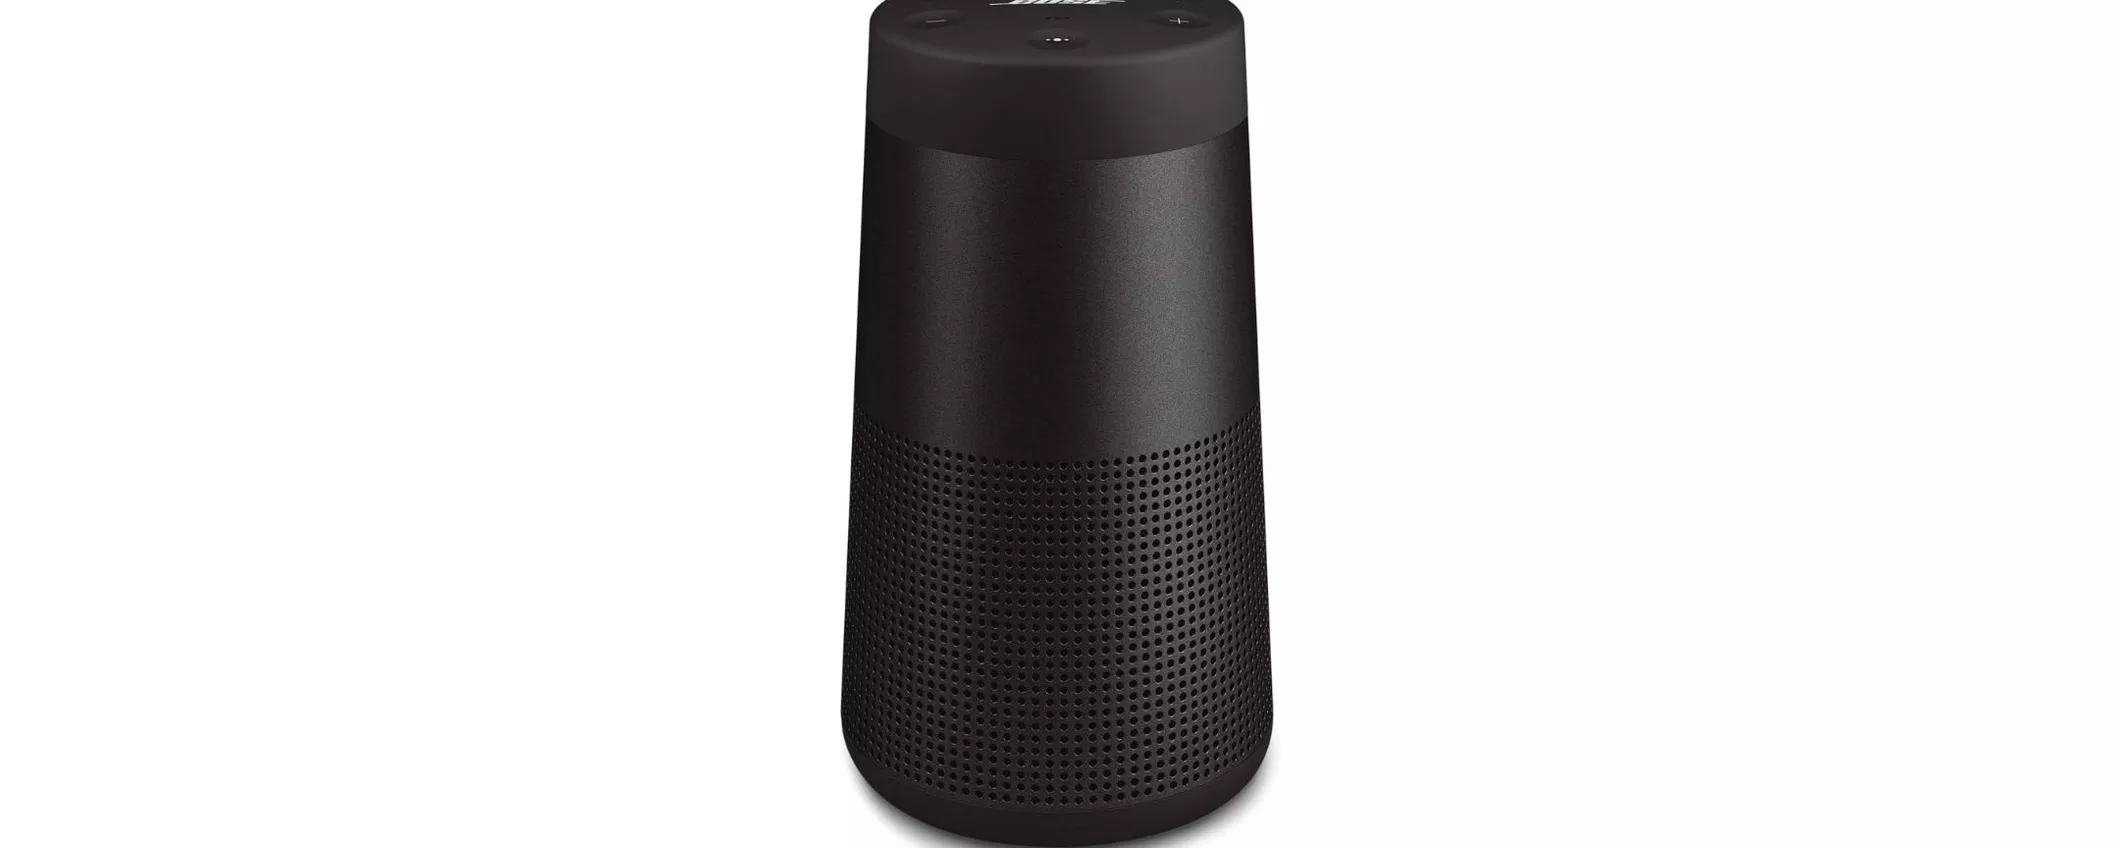 Altoparlante Bose SoundLink Revolve II ad un prezzo FOLLE su Amazon